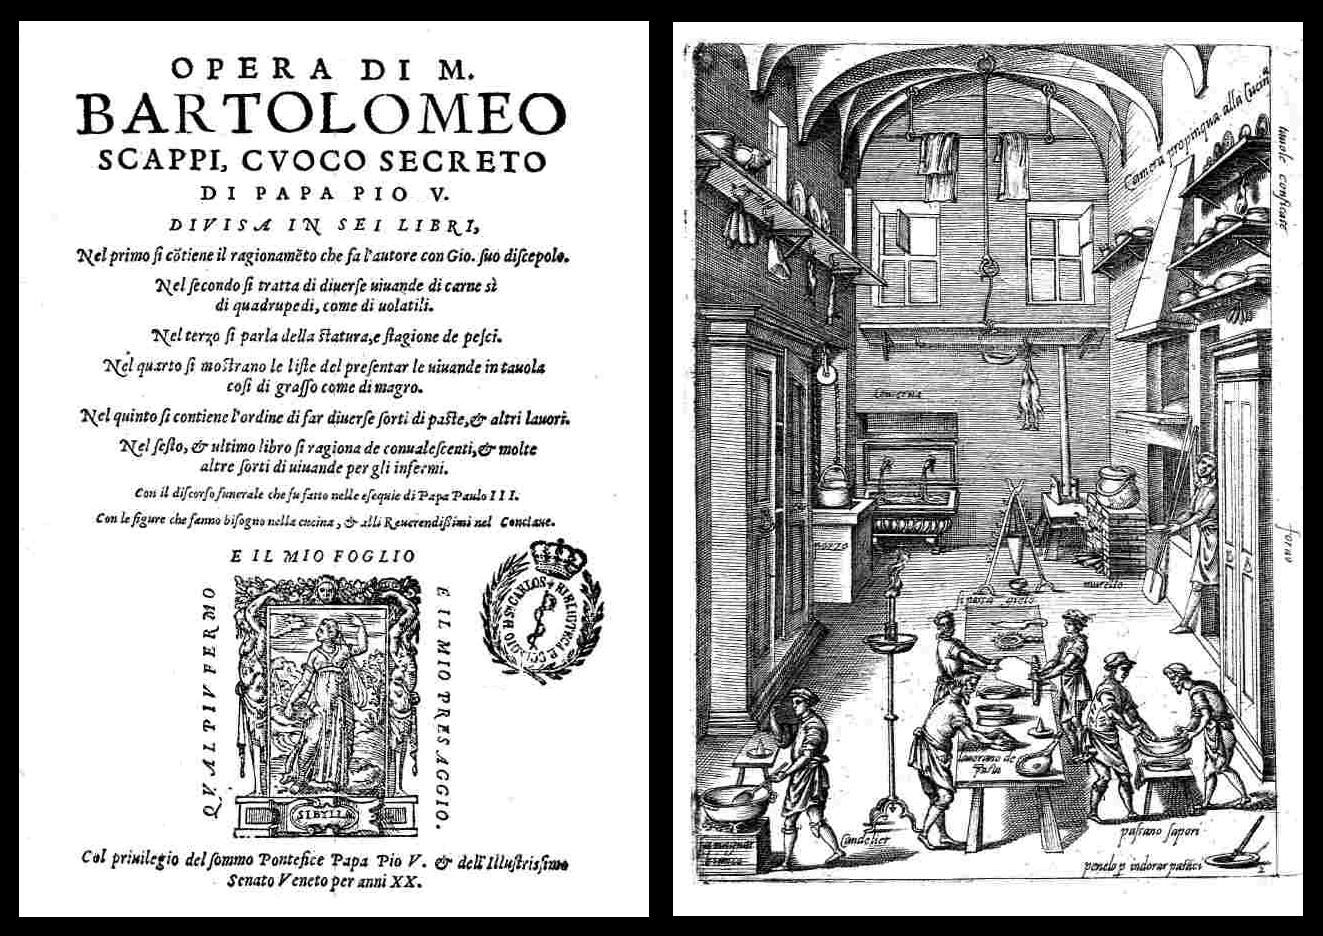 L'Opera di Bartolomeo Scappi Book plate and kitchen illustration